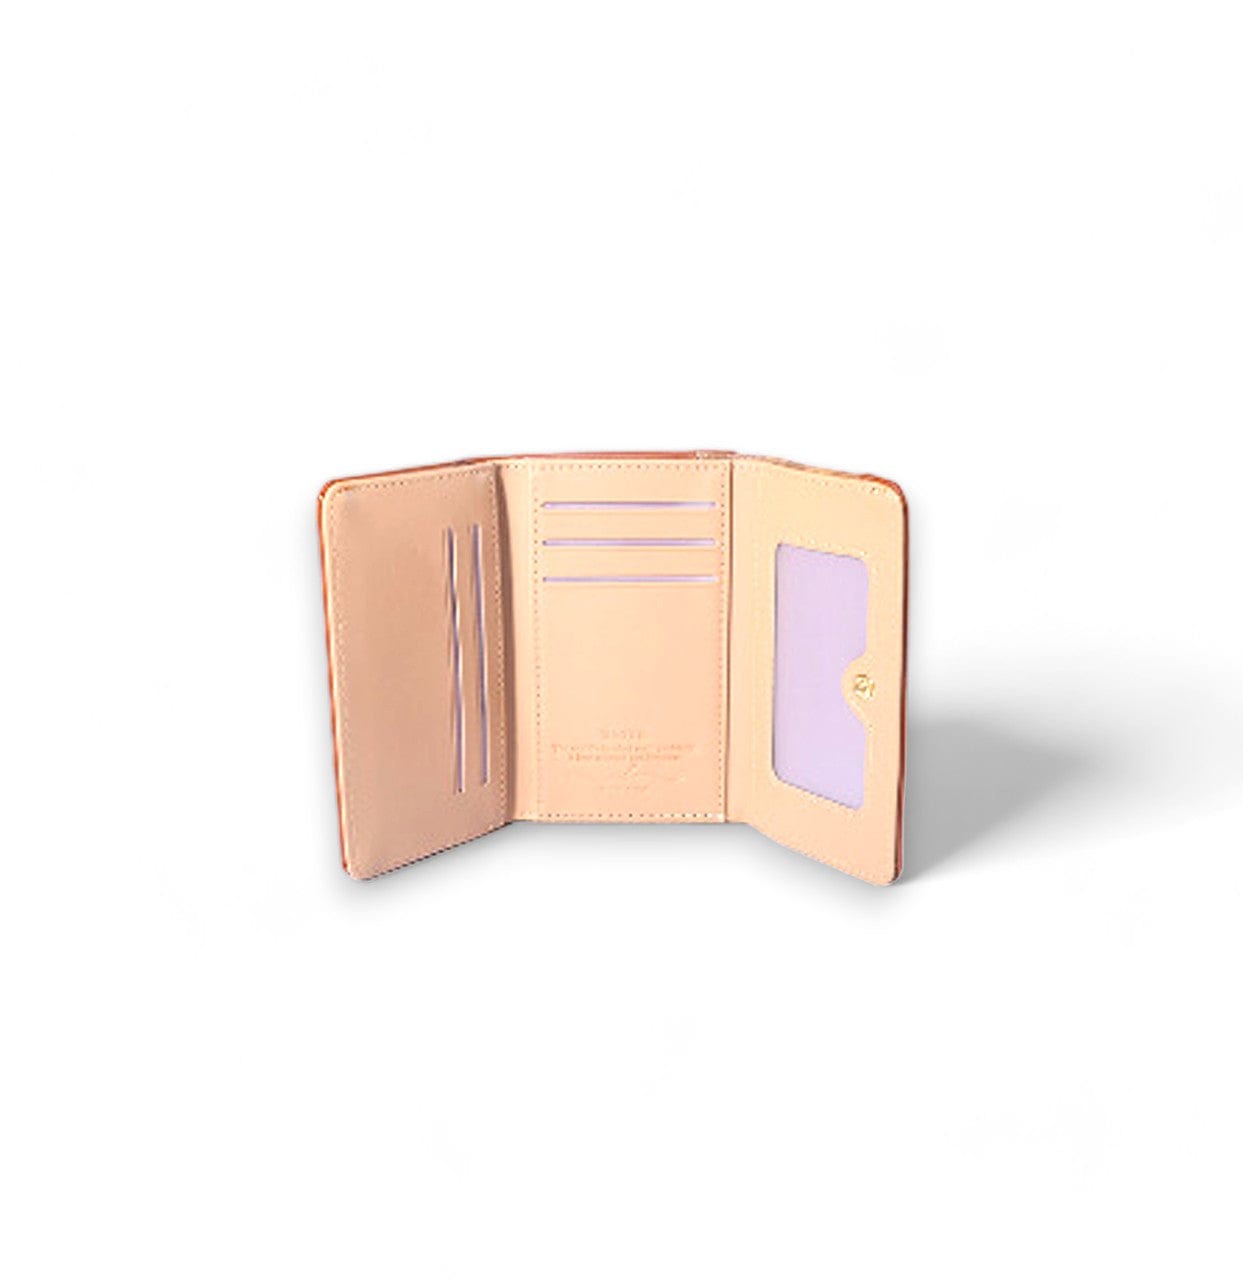 محفظة نسائية متوسطة الحجم باللون البنى الفاتح بزخرفة خارجية مميزة - KSA